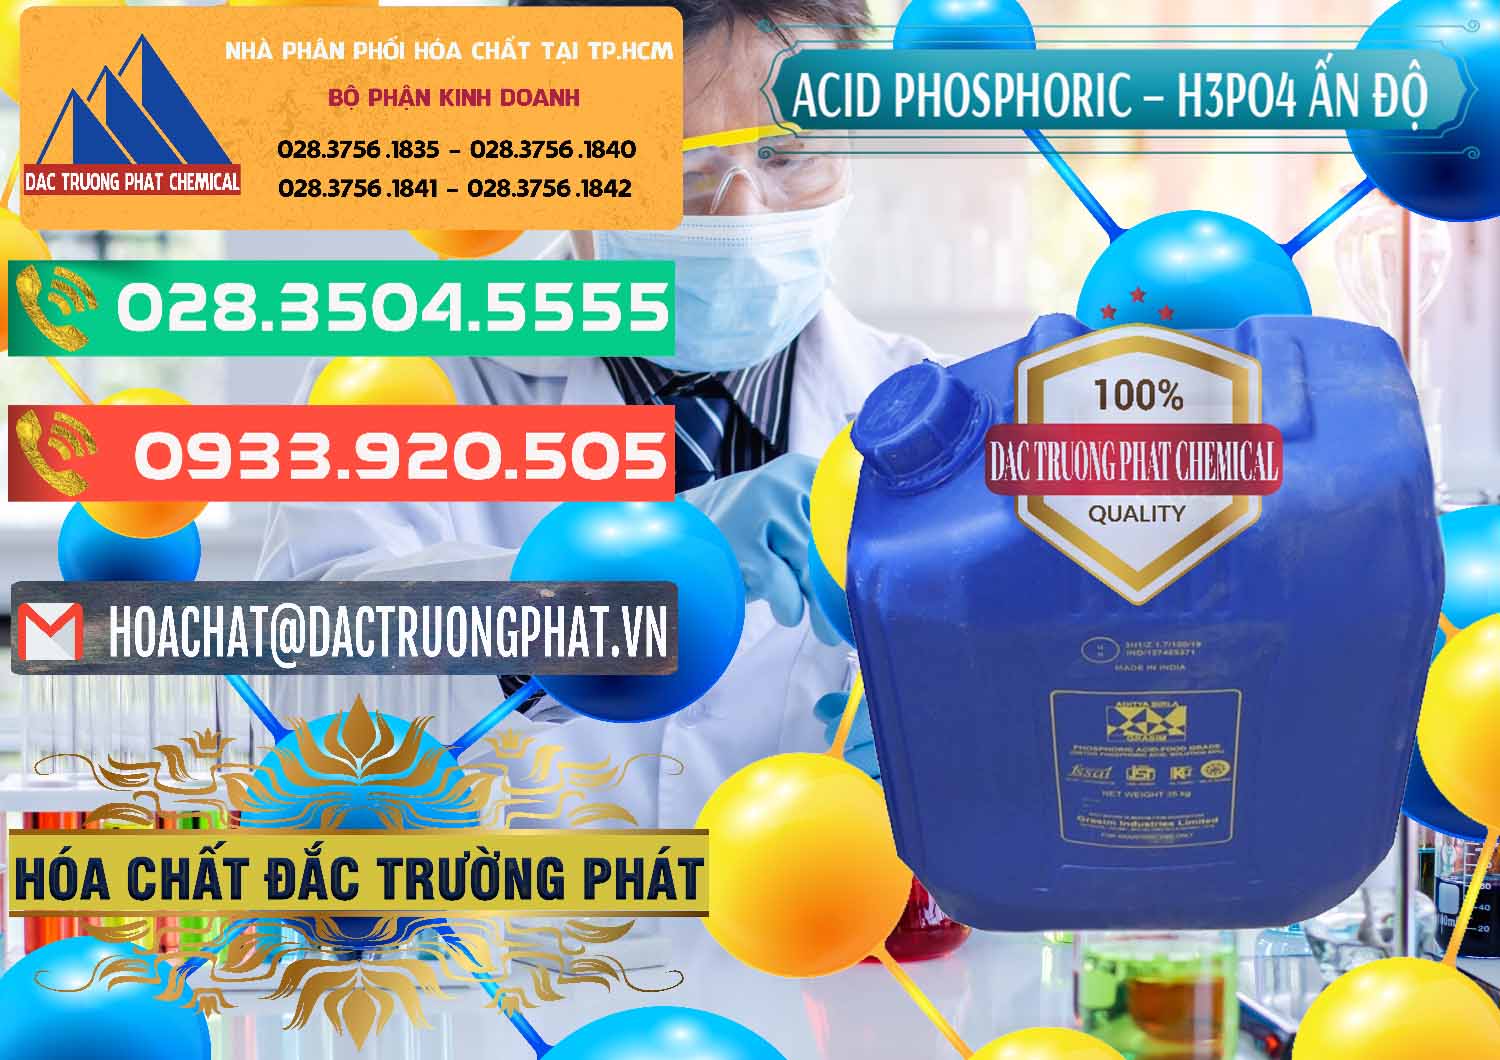 Đơn vị chuyên bán và phân phối Axit Phosphoric H3PO4 85% Ấn Độ - 0350 - Cty chuyên kinh doanh và cung cấp hóa chất tại TP.HCM - congtyhoachat.com.vn